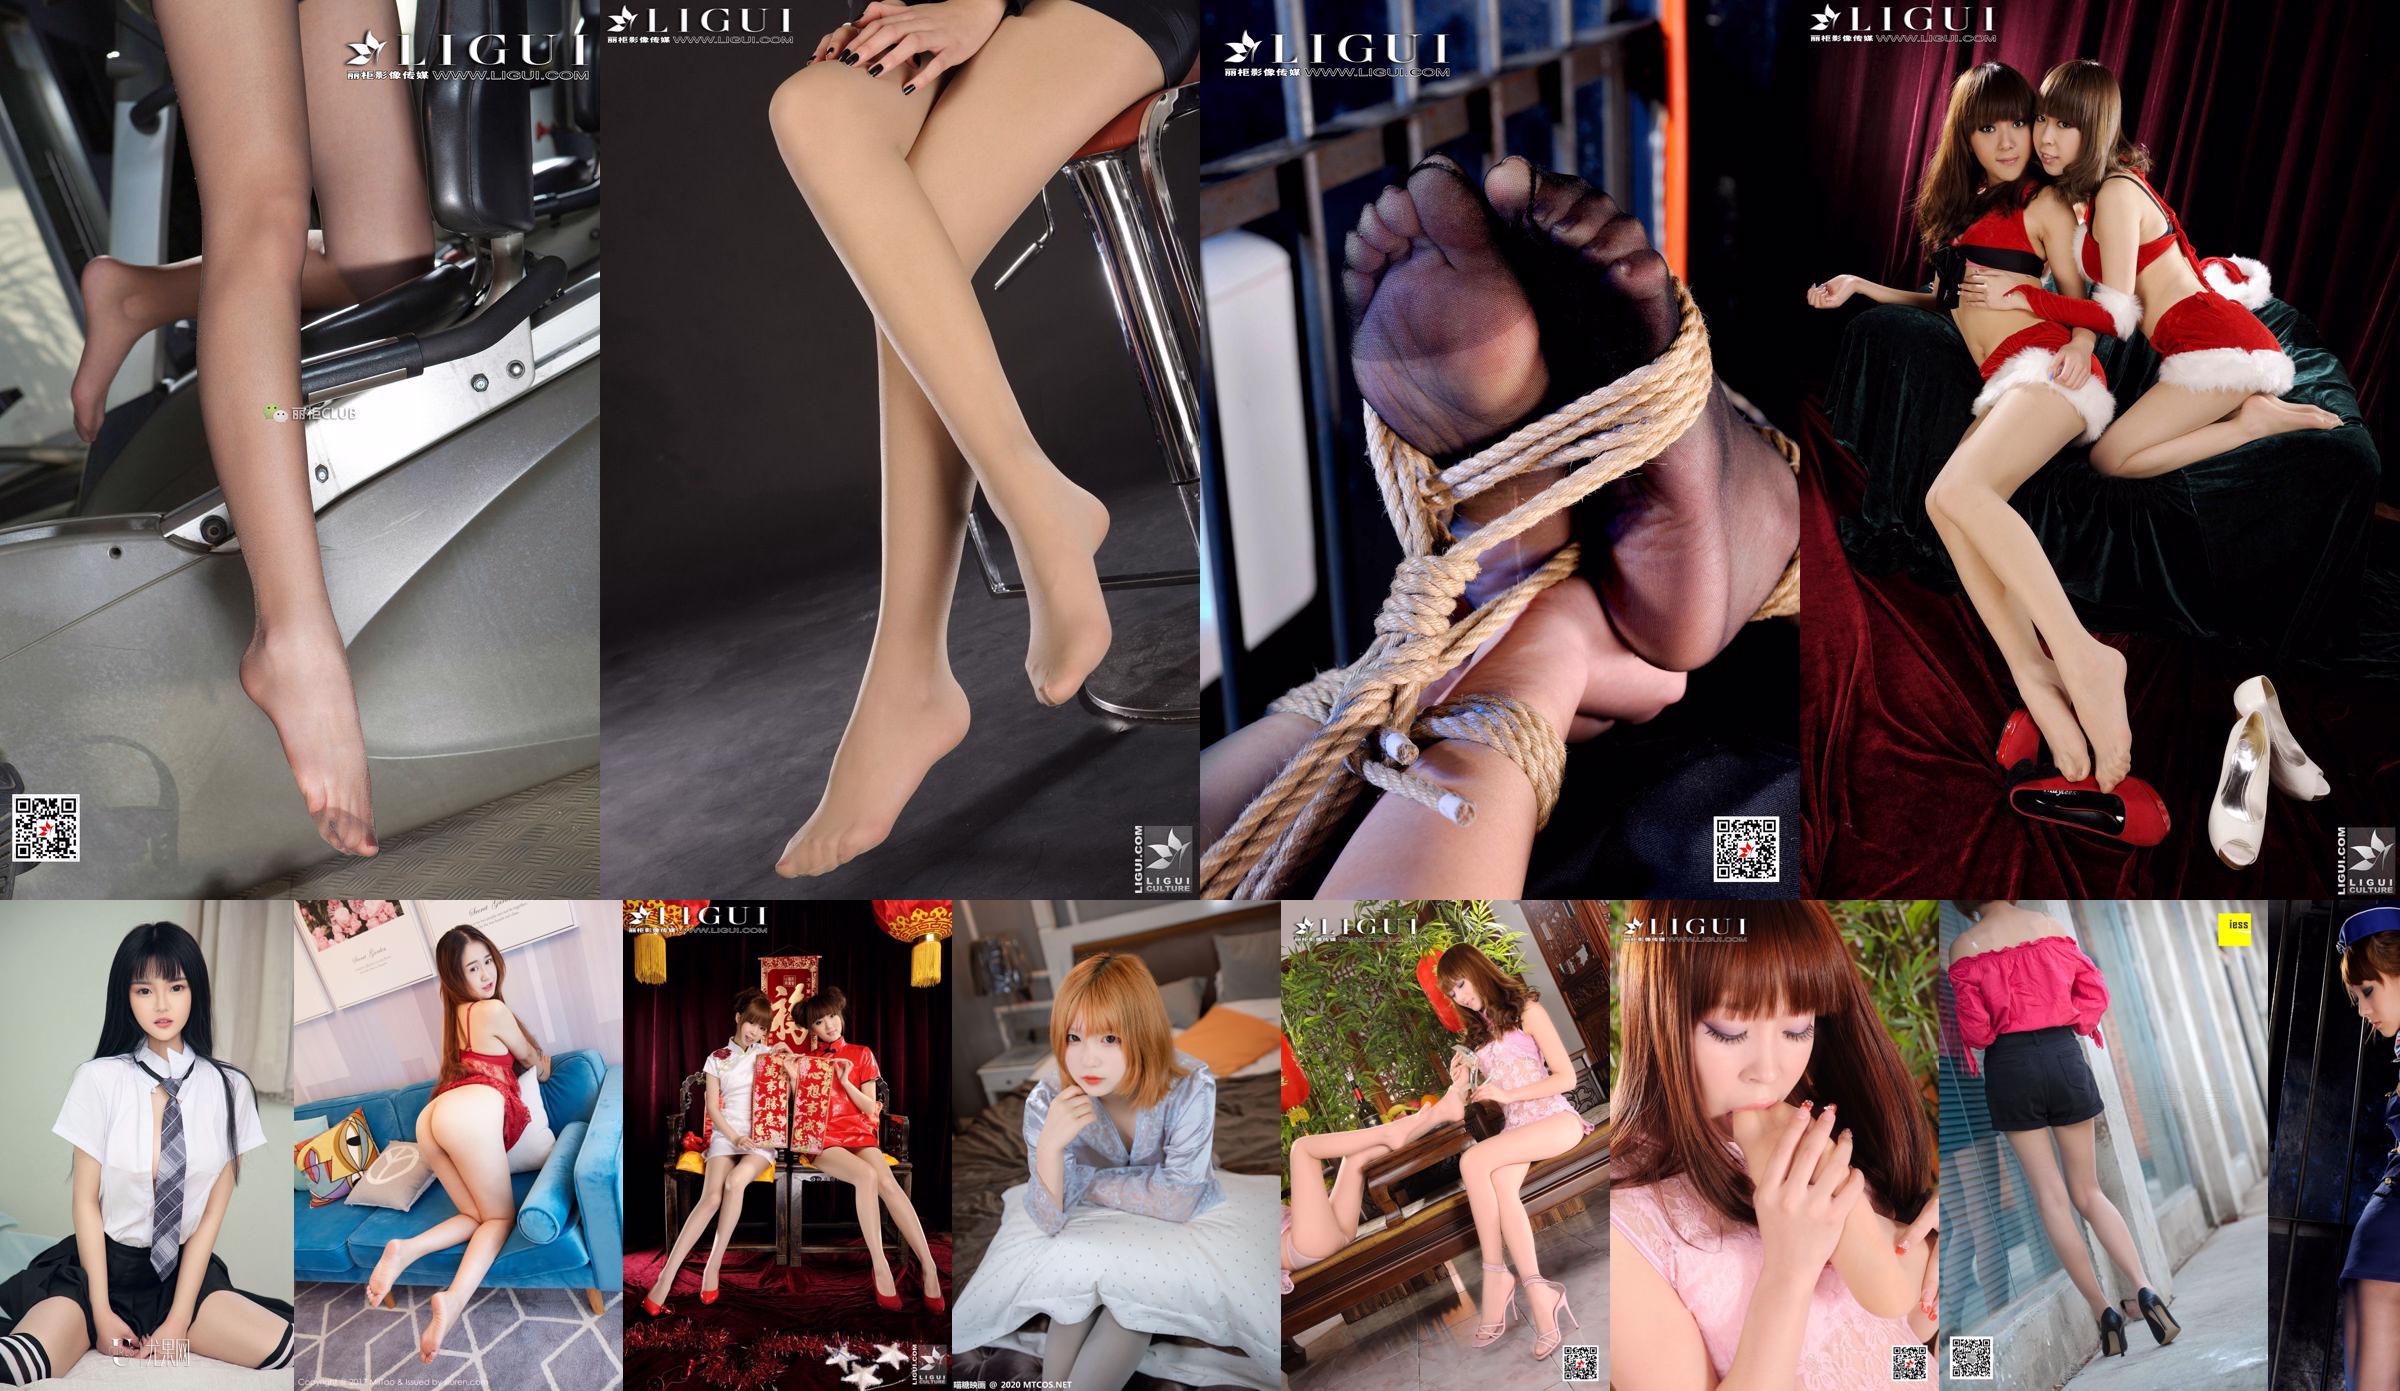 [丽柜美束LiGui] Model Momoko "Stewardess Bundled with Rope Art Silky Foot" Top and Bottom Collection Beautiful Legs and Jade Foot No.3e280b Page 4